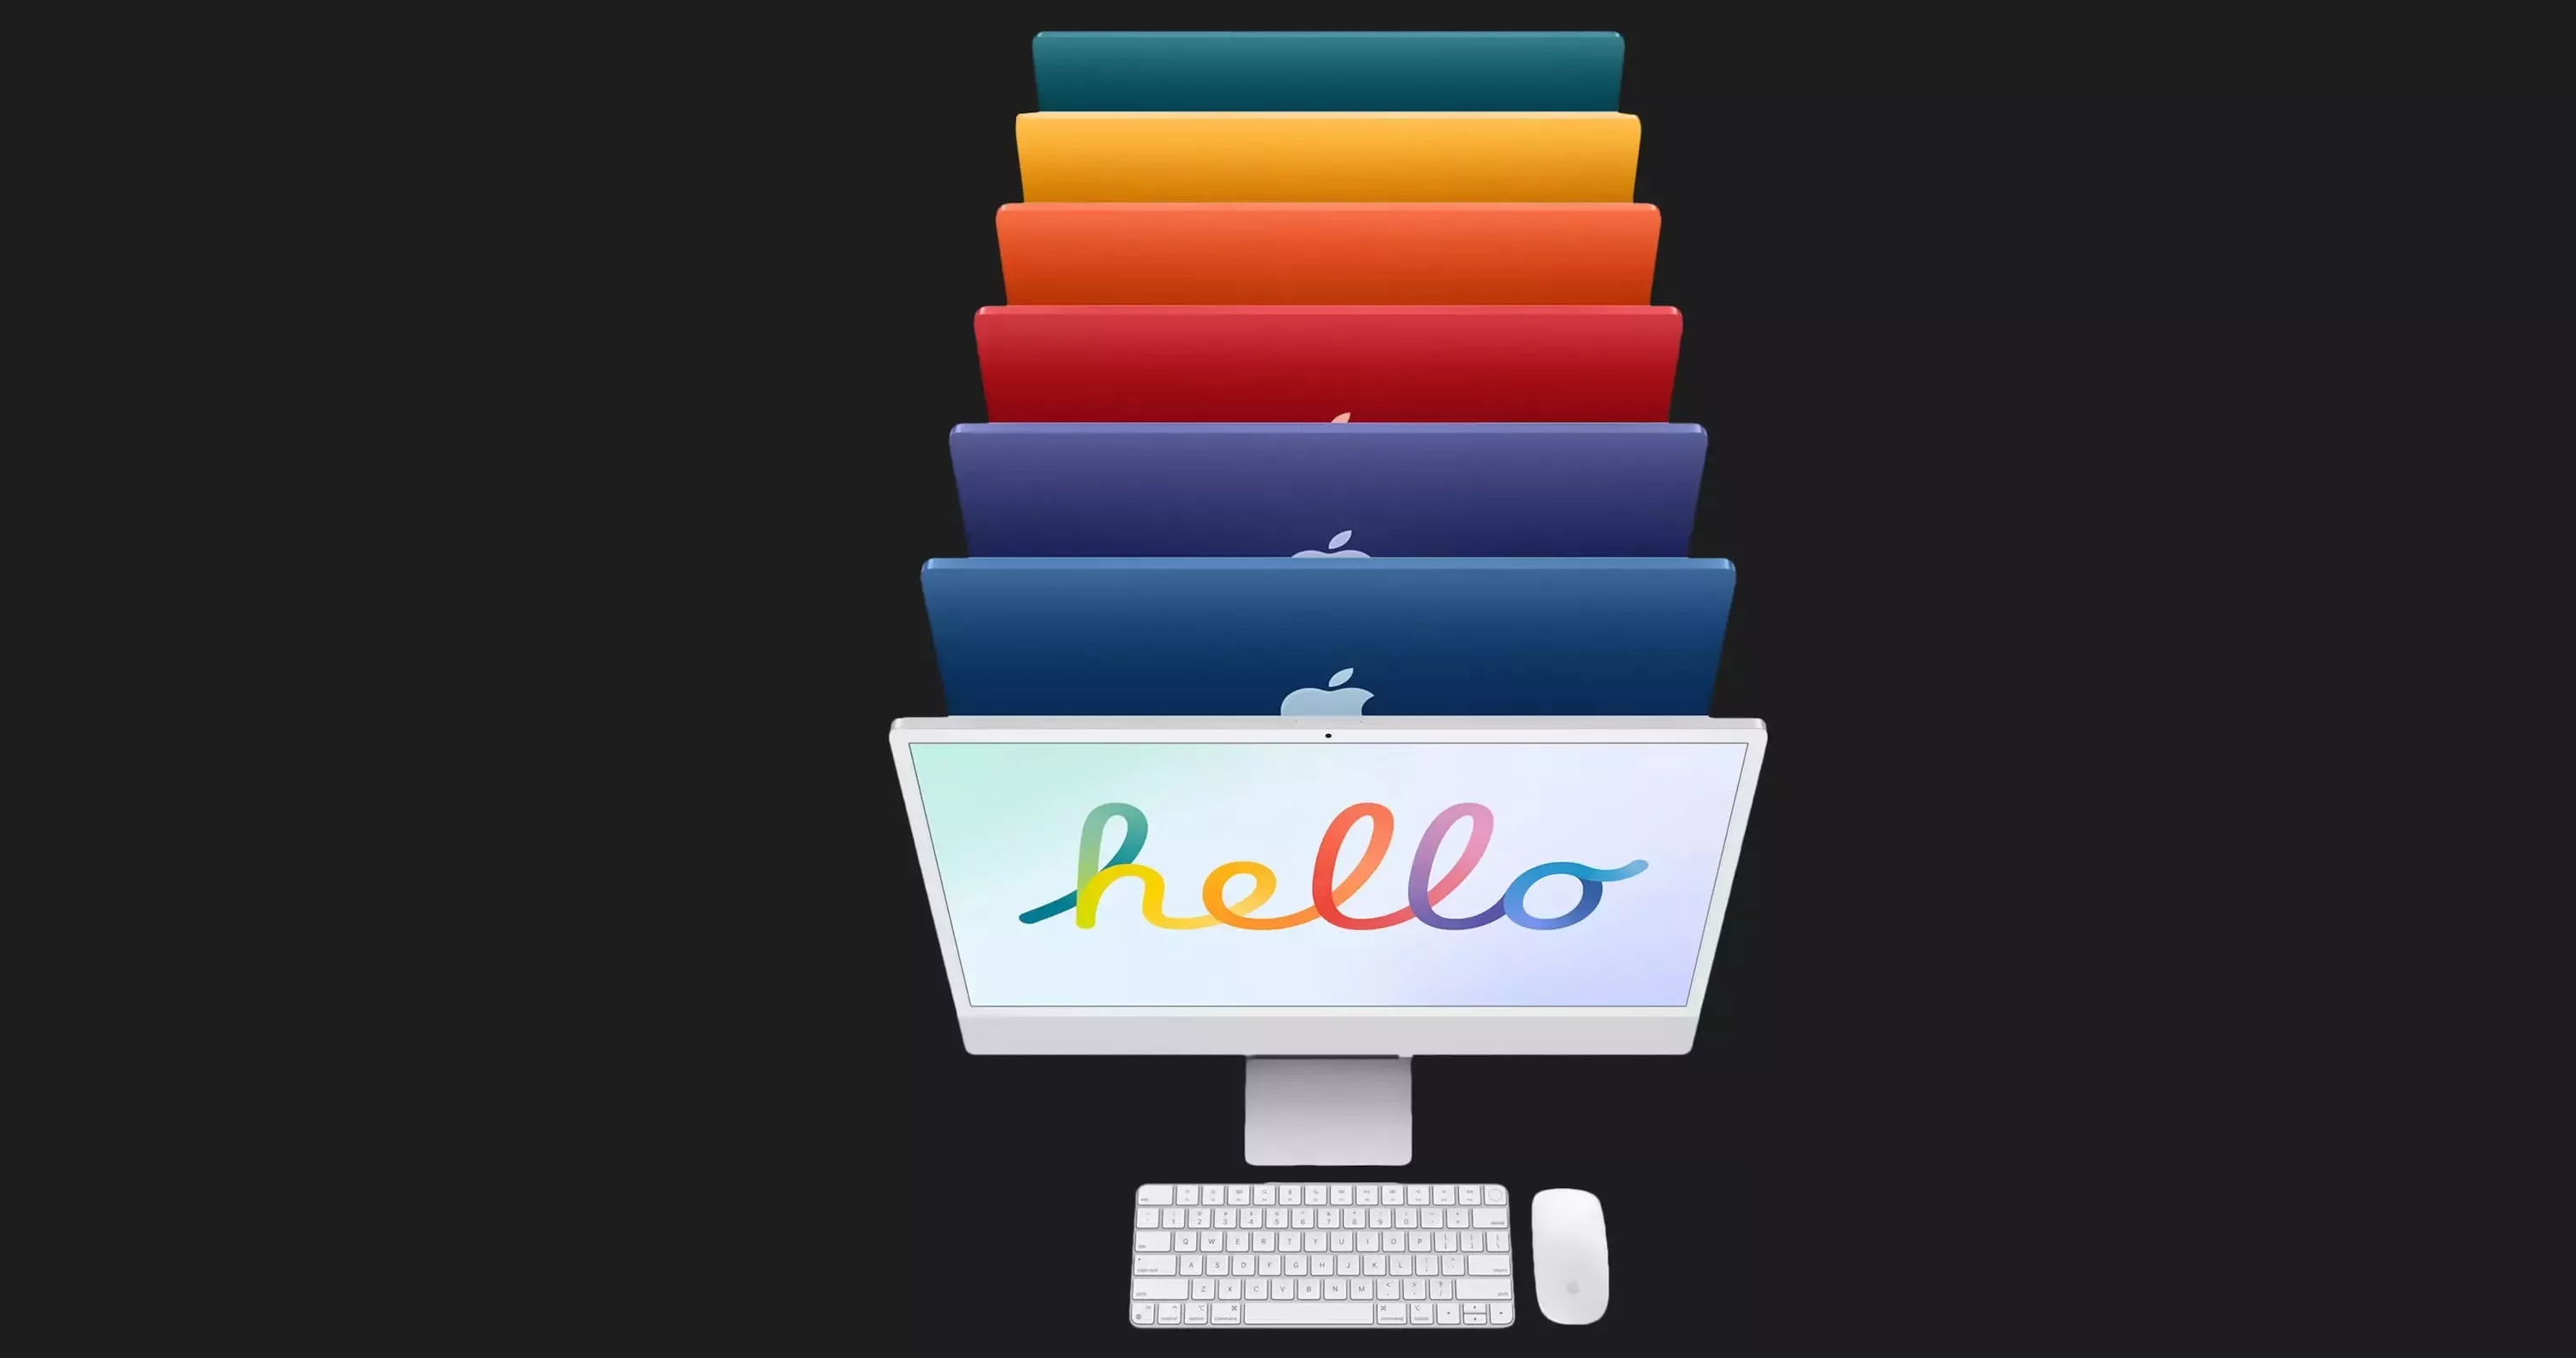 Apple iMac 24 with Retina 4.5K, Apple M3, 512GB, 8 CPU / 10 GPU, 8GB RAM, Orange (Z19S) (2023)